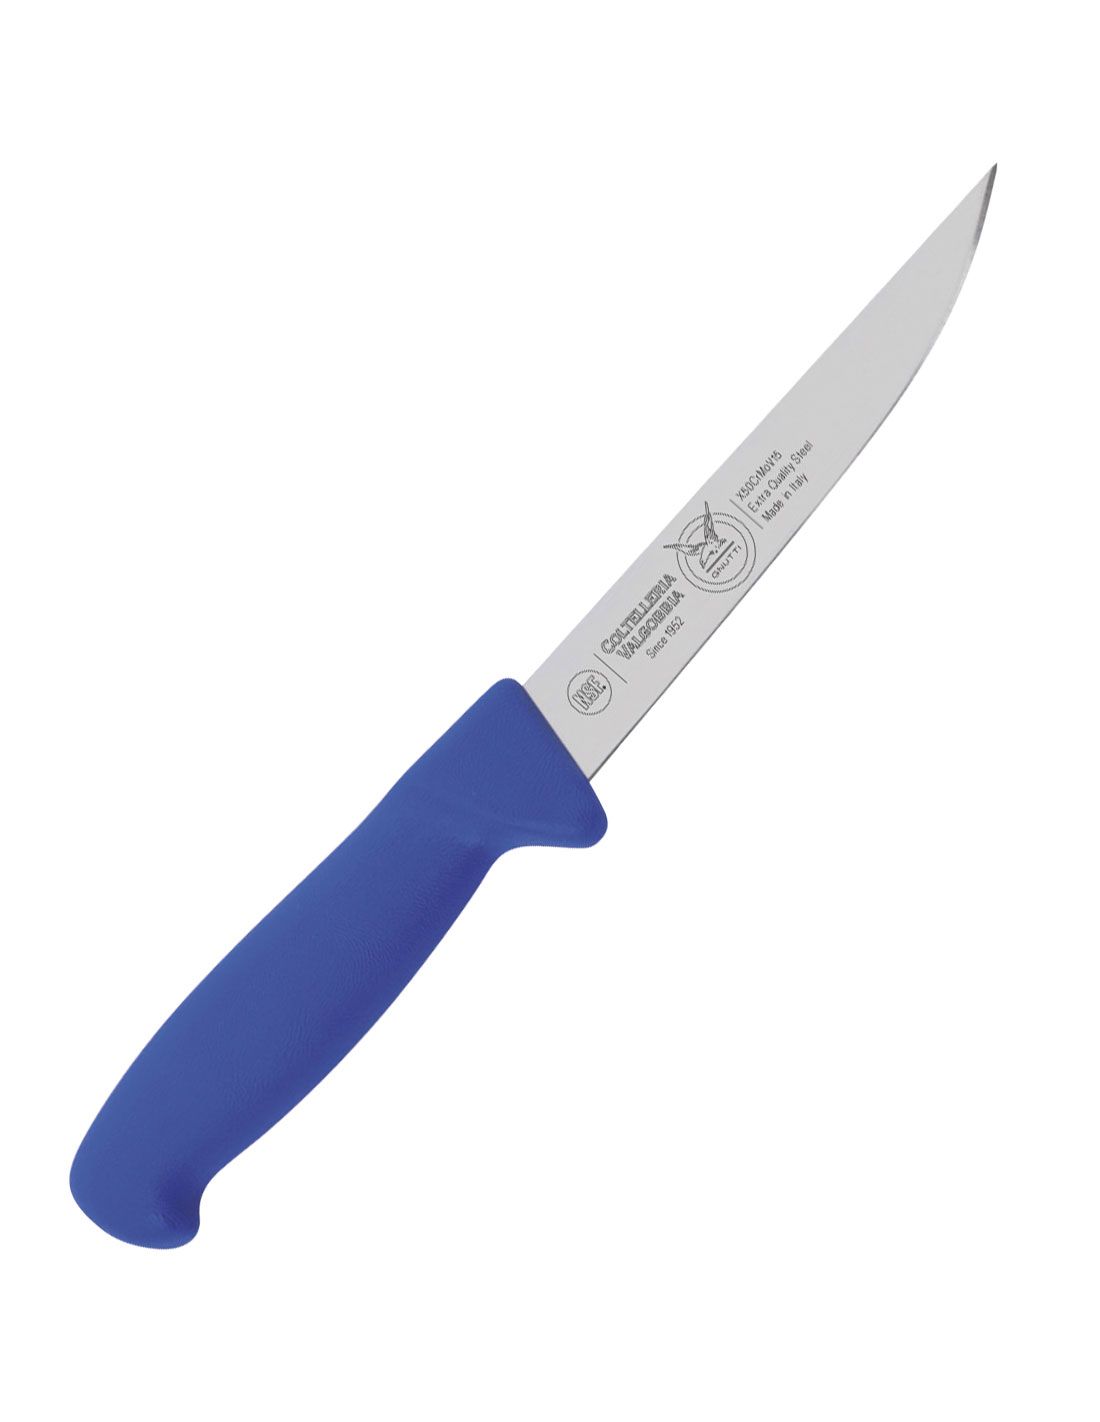 Valgobbia - coltello da disosso stretto lama da cm 14, 16, 18